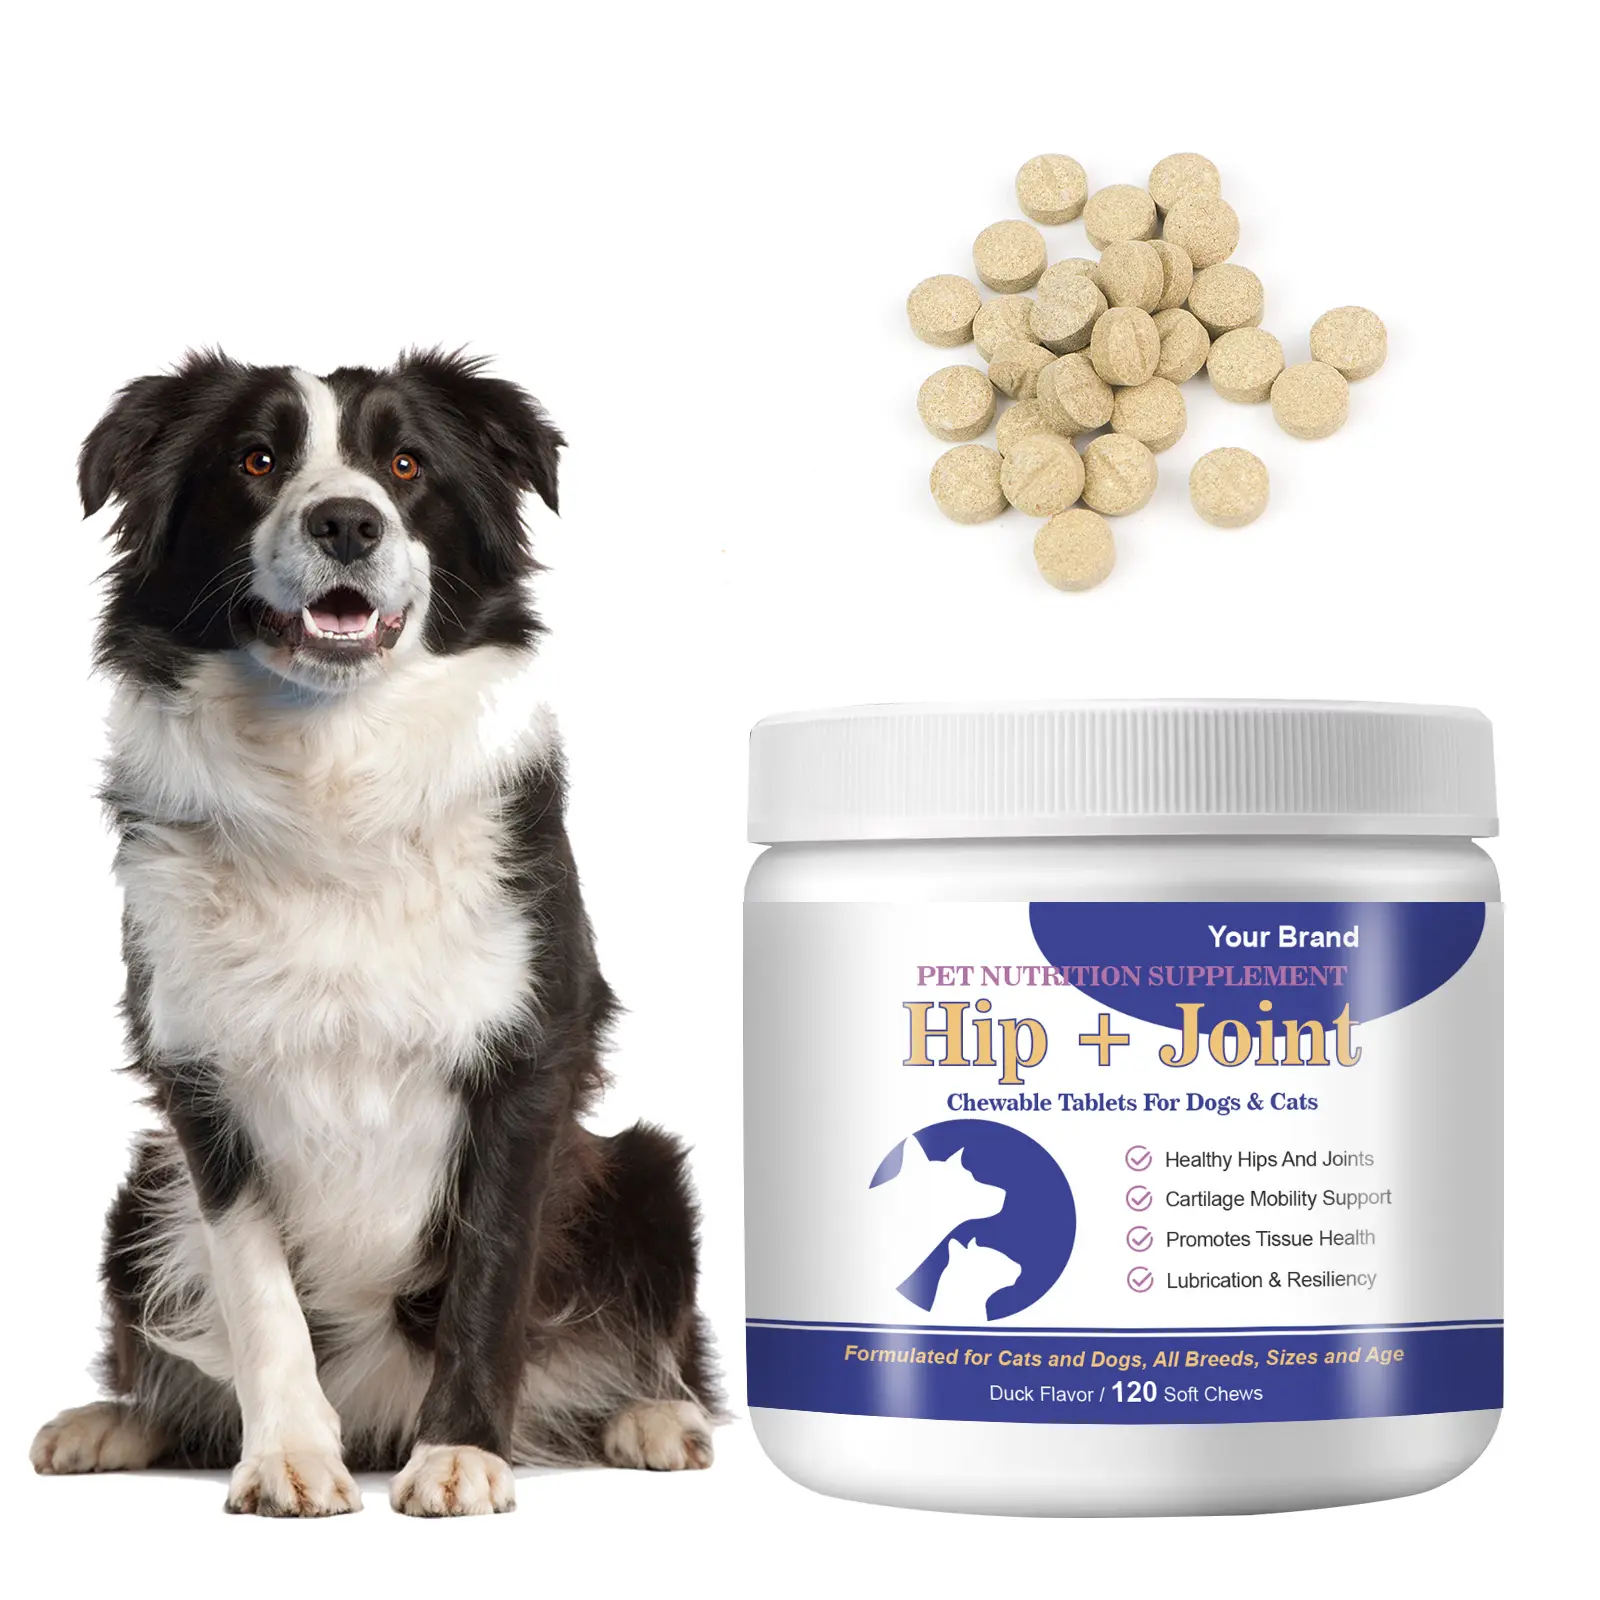 Oem hip và doanh bổ sung chó Glucosamine cộng với máy tính bảng cho chó sức khỏe bổ sung